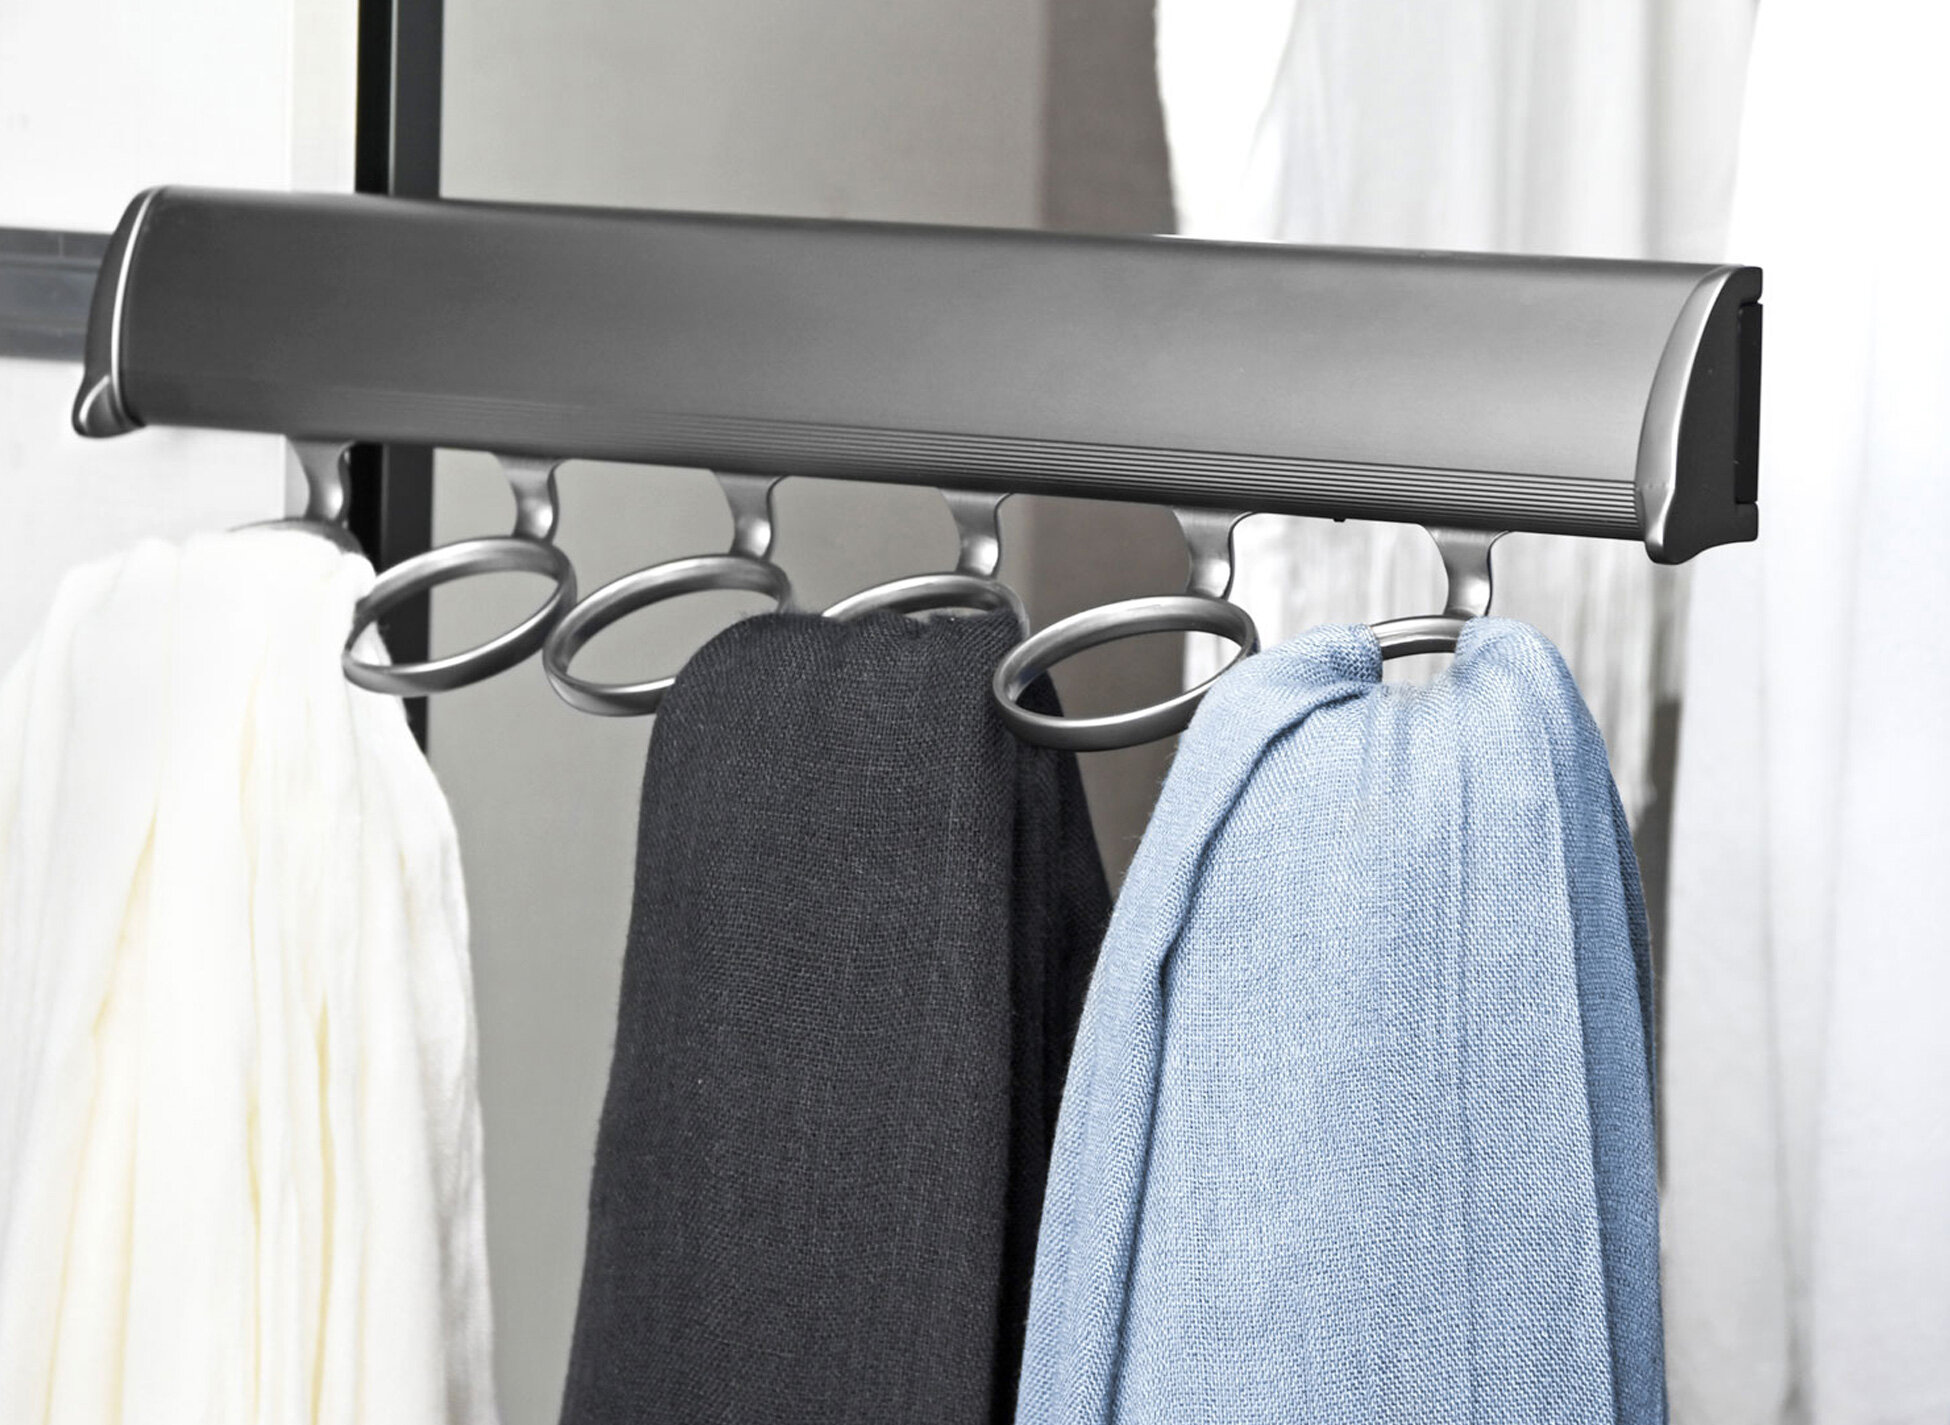 Hpybest 1pc Door Storage Rack Towel Coat Belt Hanger Organizer for Home Kitchen Bathroom 